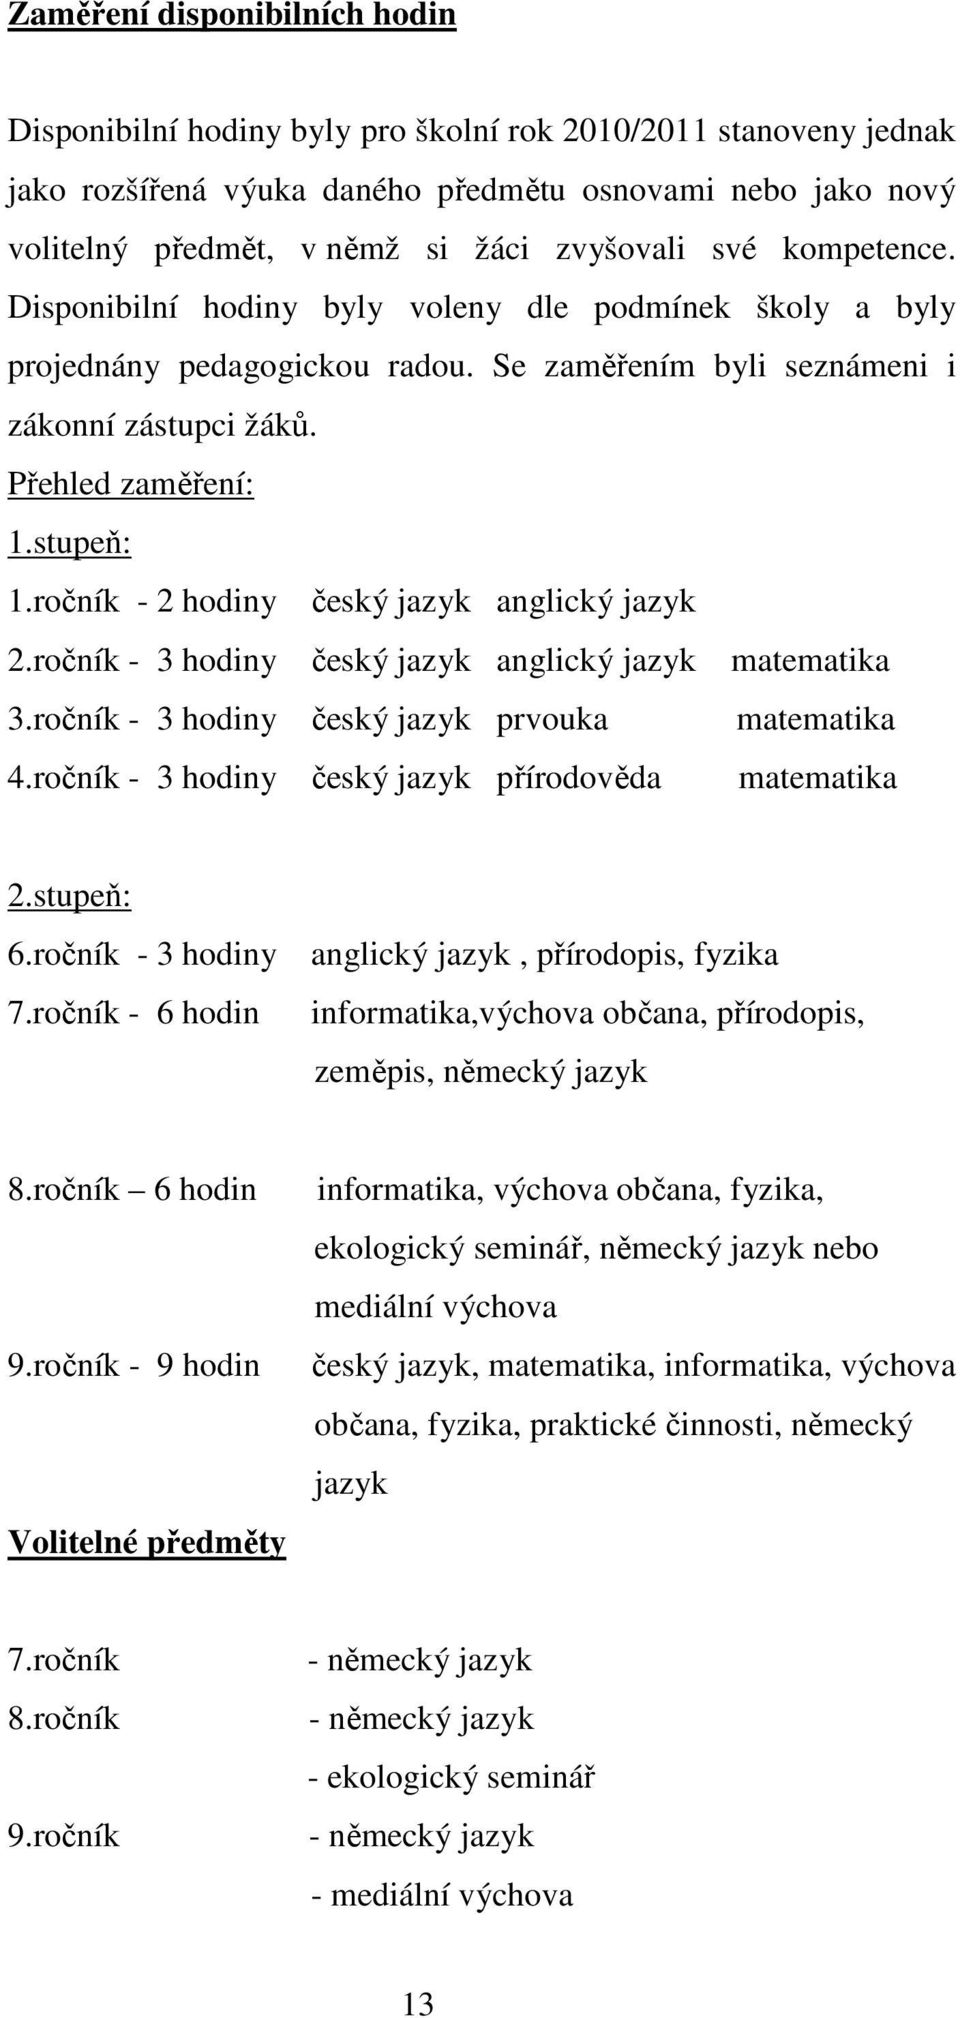 ročník - 2 hodiny český jazyk anglický jazyk 2.ročník - 3 hodiny český jazyk anglický jazyk matematika 3.ročník - 3 hodiny český jazyk prvouka matematika 4.